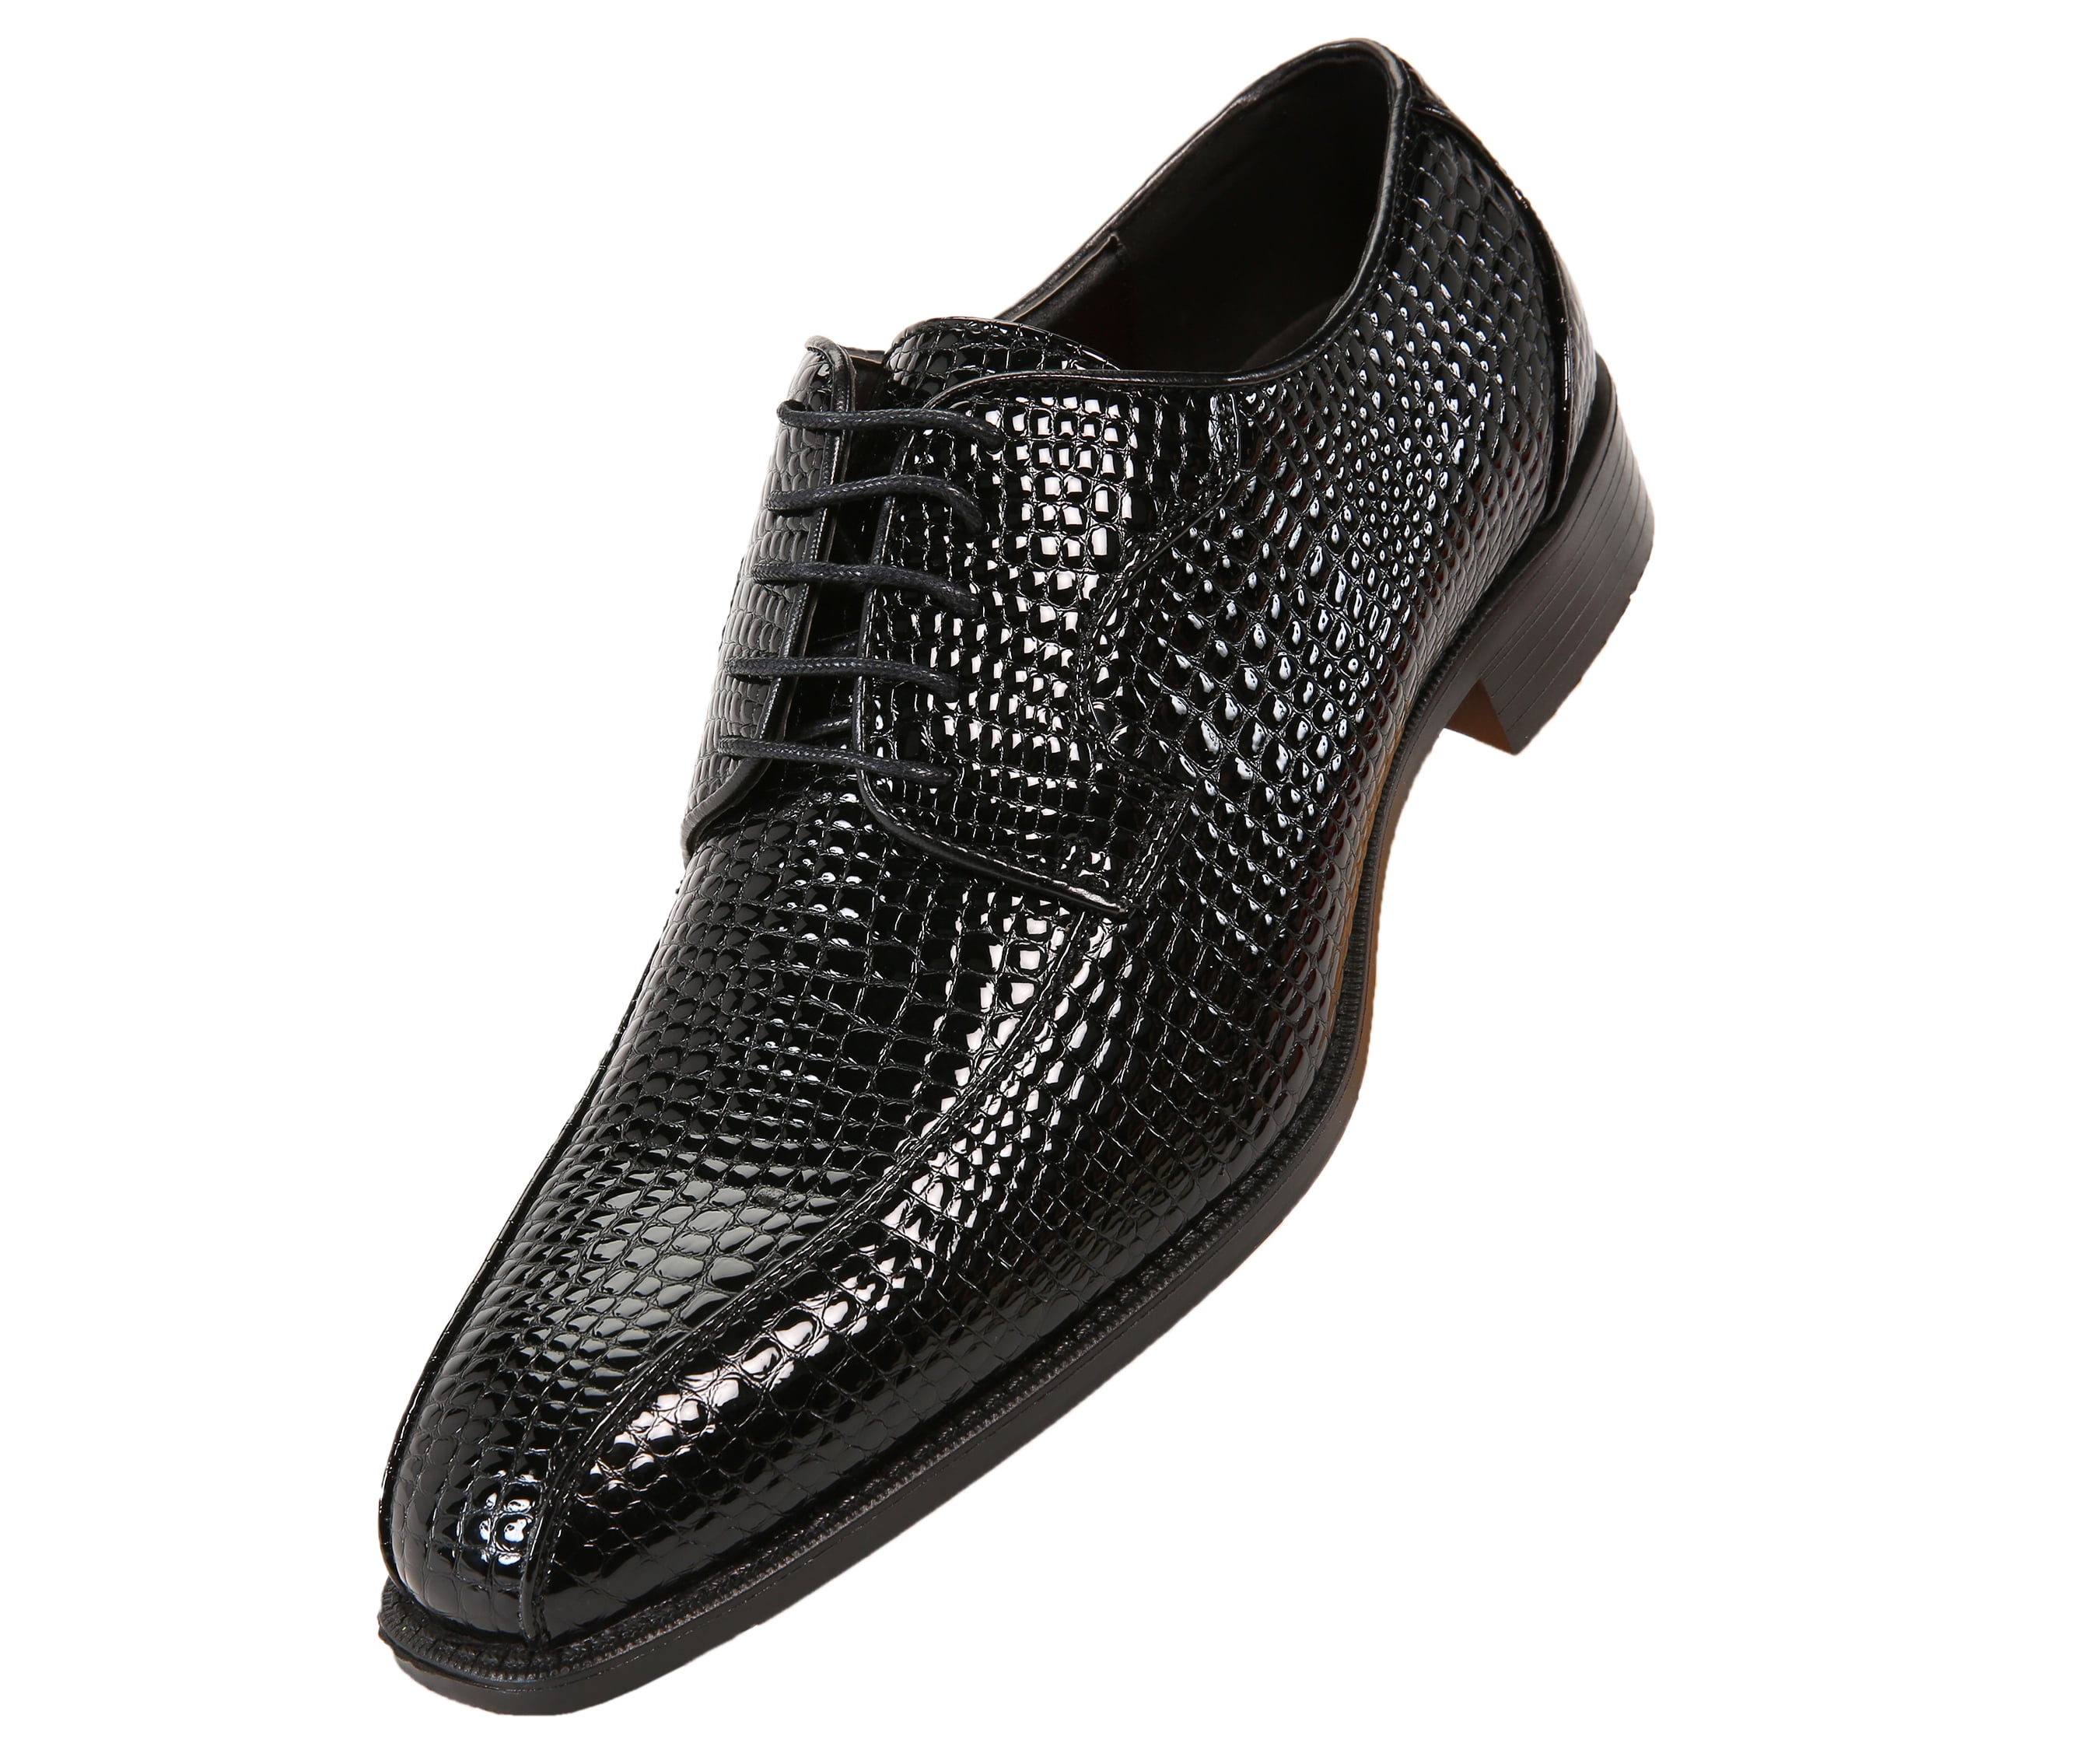 Black Burnished Toe Oxford Lace-Ups Men's Dress Shoes Bolano Brayden Exotic EEL Skin Print Original Designer Shoes Exotic Formal Shoes for Men 